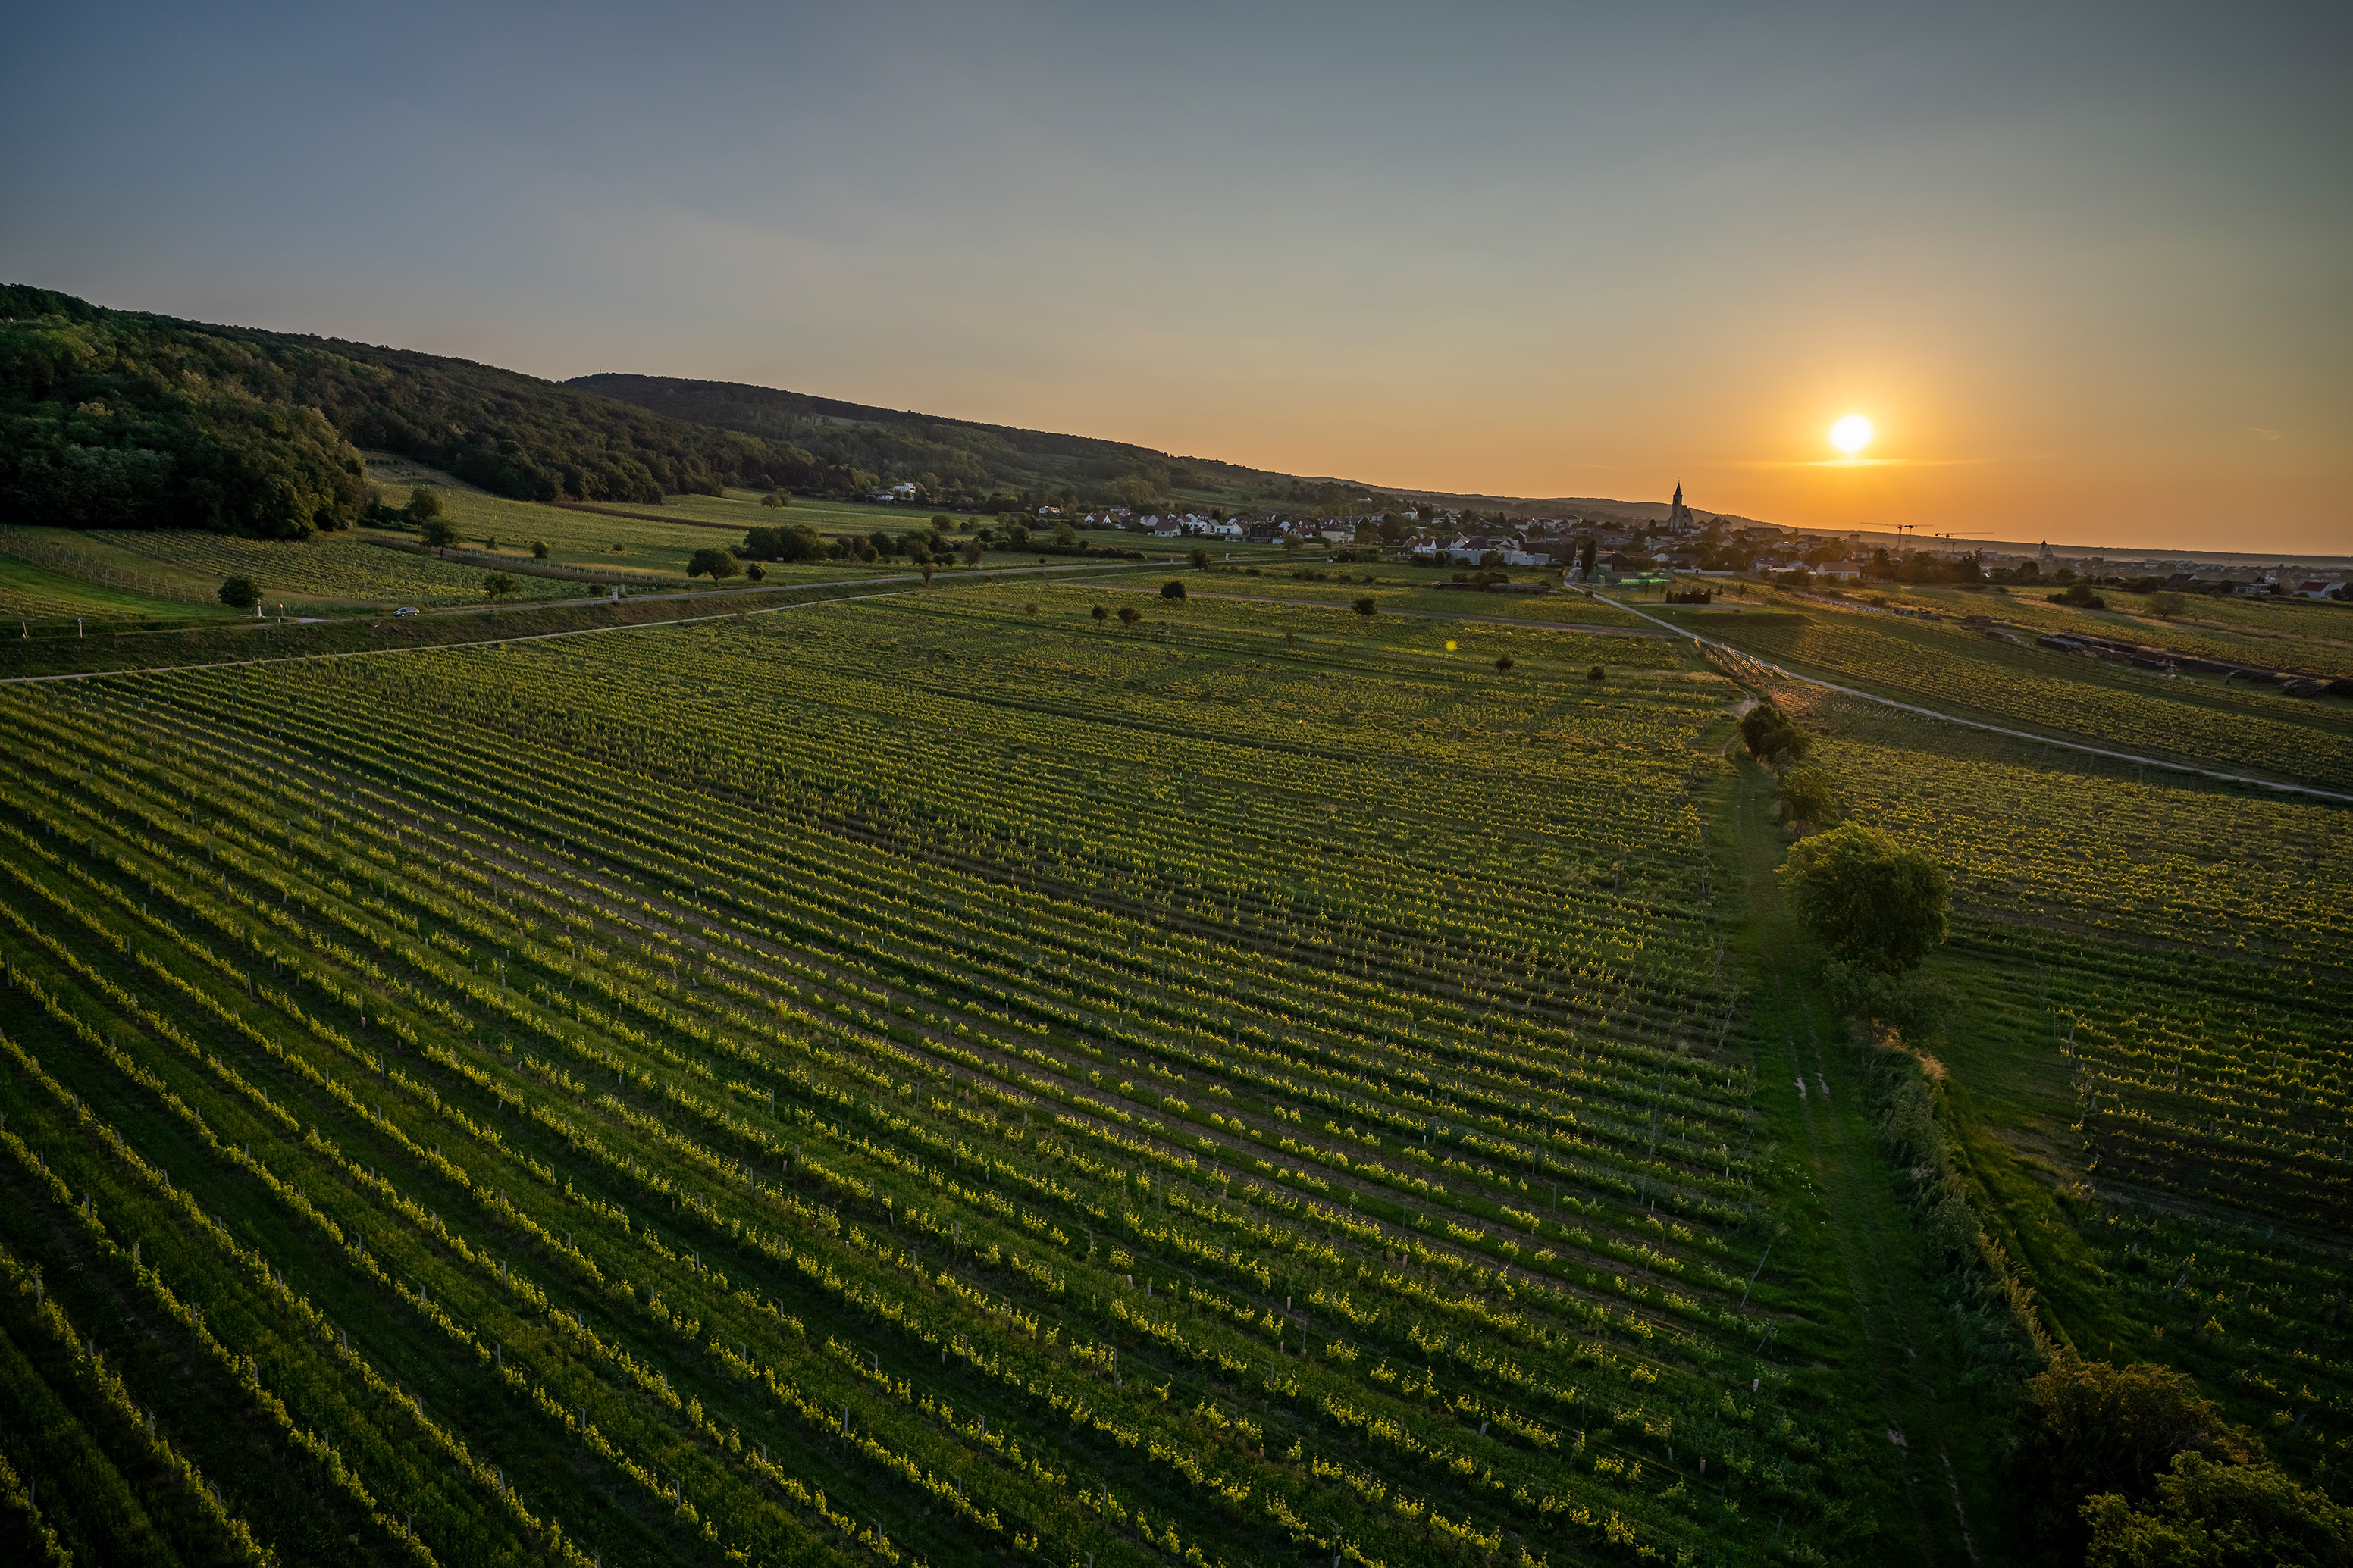 Panoramablick über die Weingärten des Weinguts Kollwentz mit Sonnenuntergang